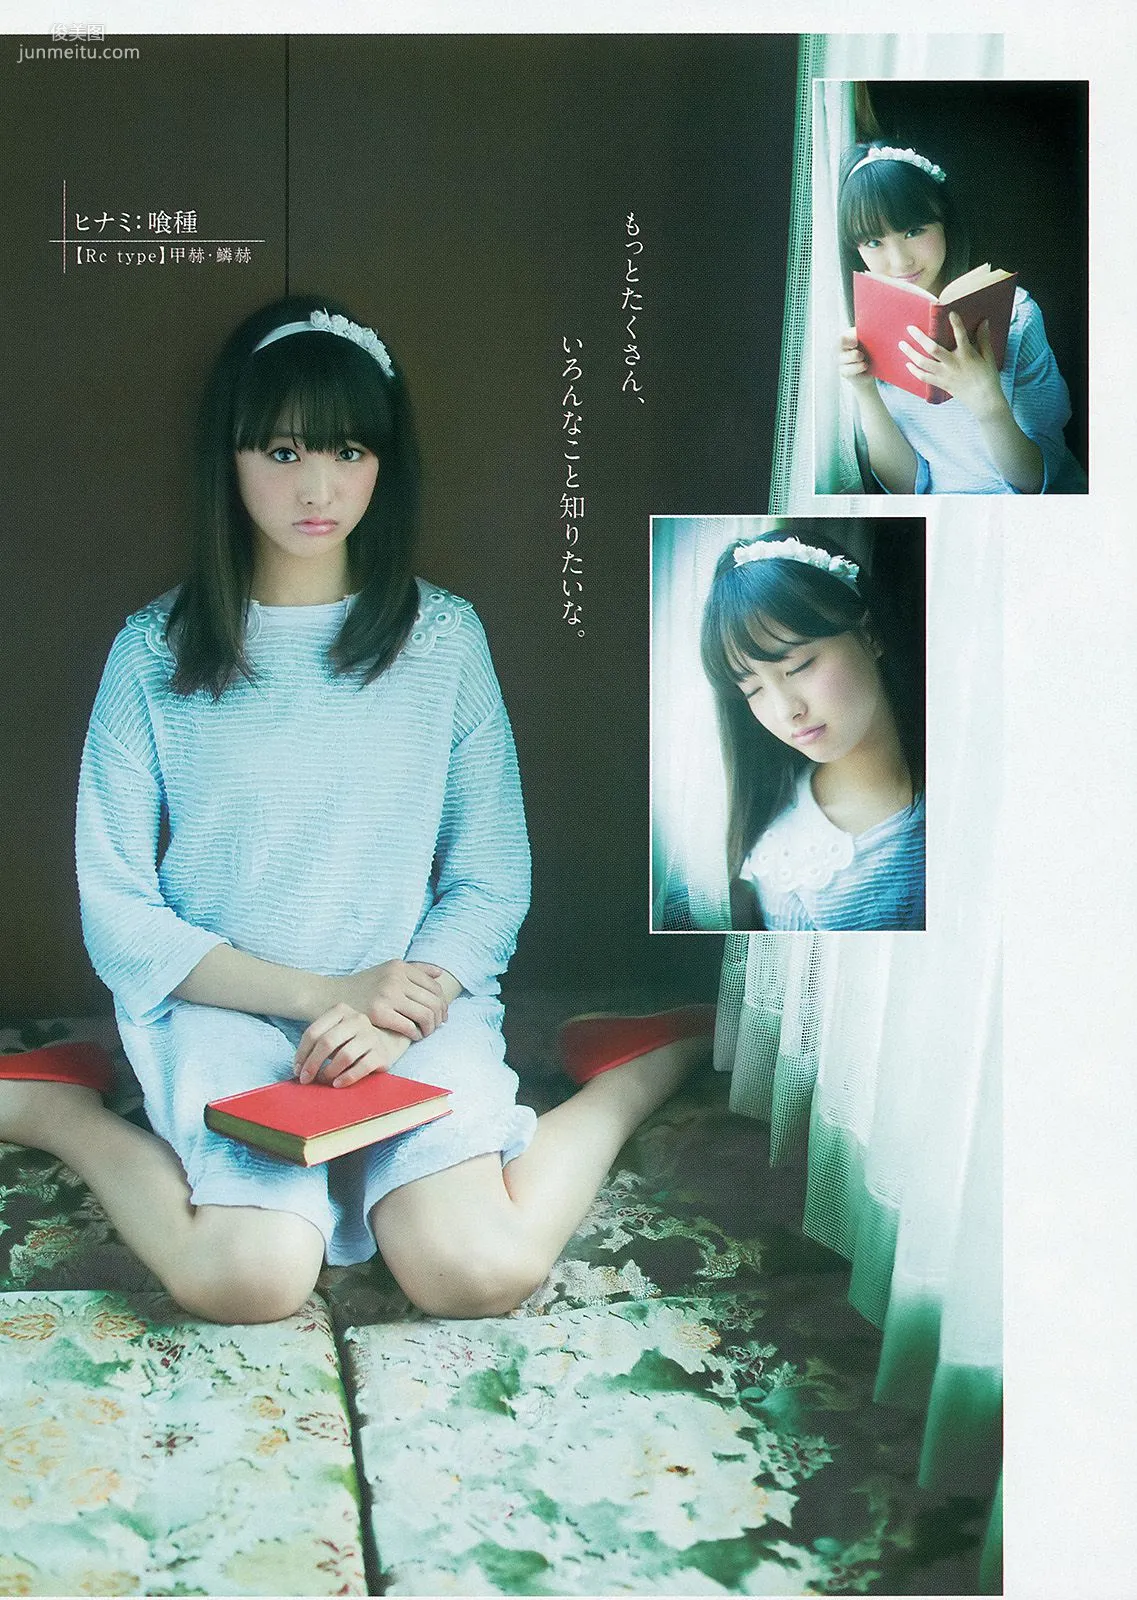 おのののか 高見奈央 YJ×Seventeenモデル [Weekly Young Jump] 2014年No.24 写真杂志16